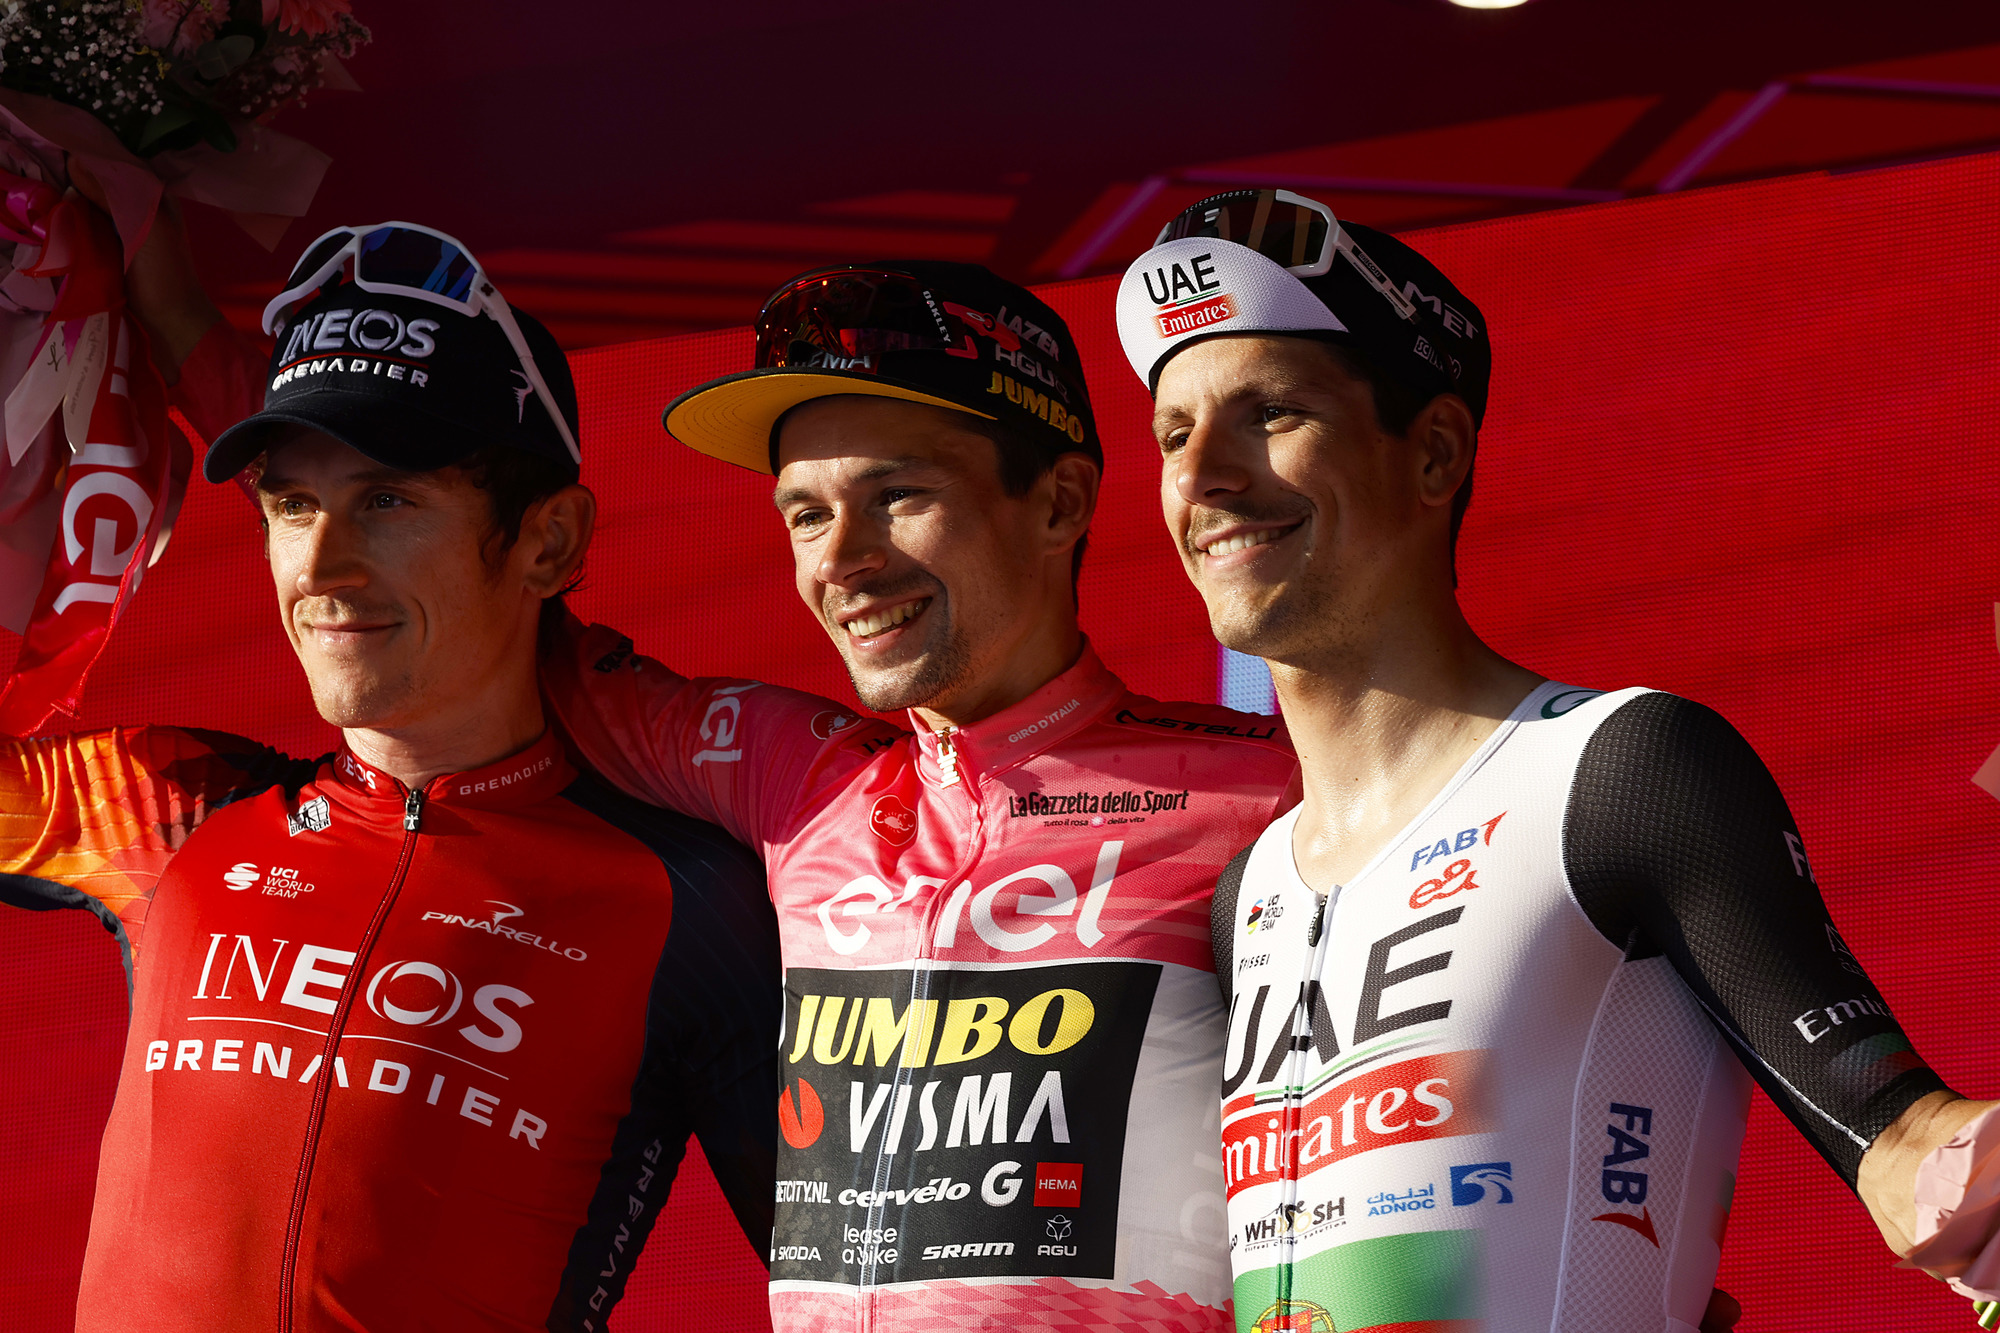 Primoz Roglic é o grande vencedor do Giro d’Italia! João Almeida é 3º e vence juventude! Mark Cavendish vence a etapa final!